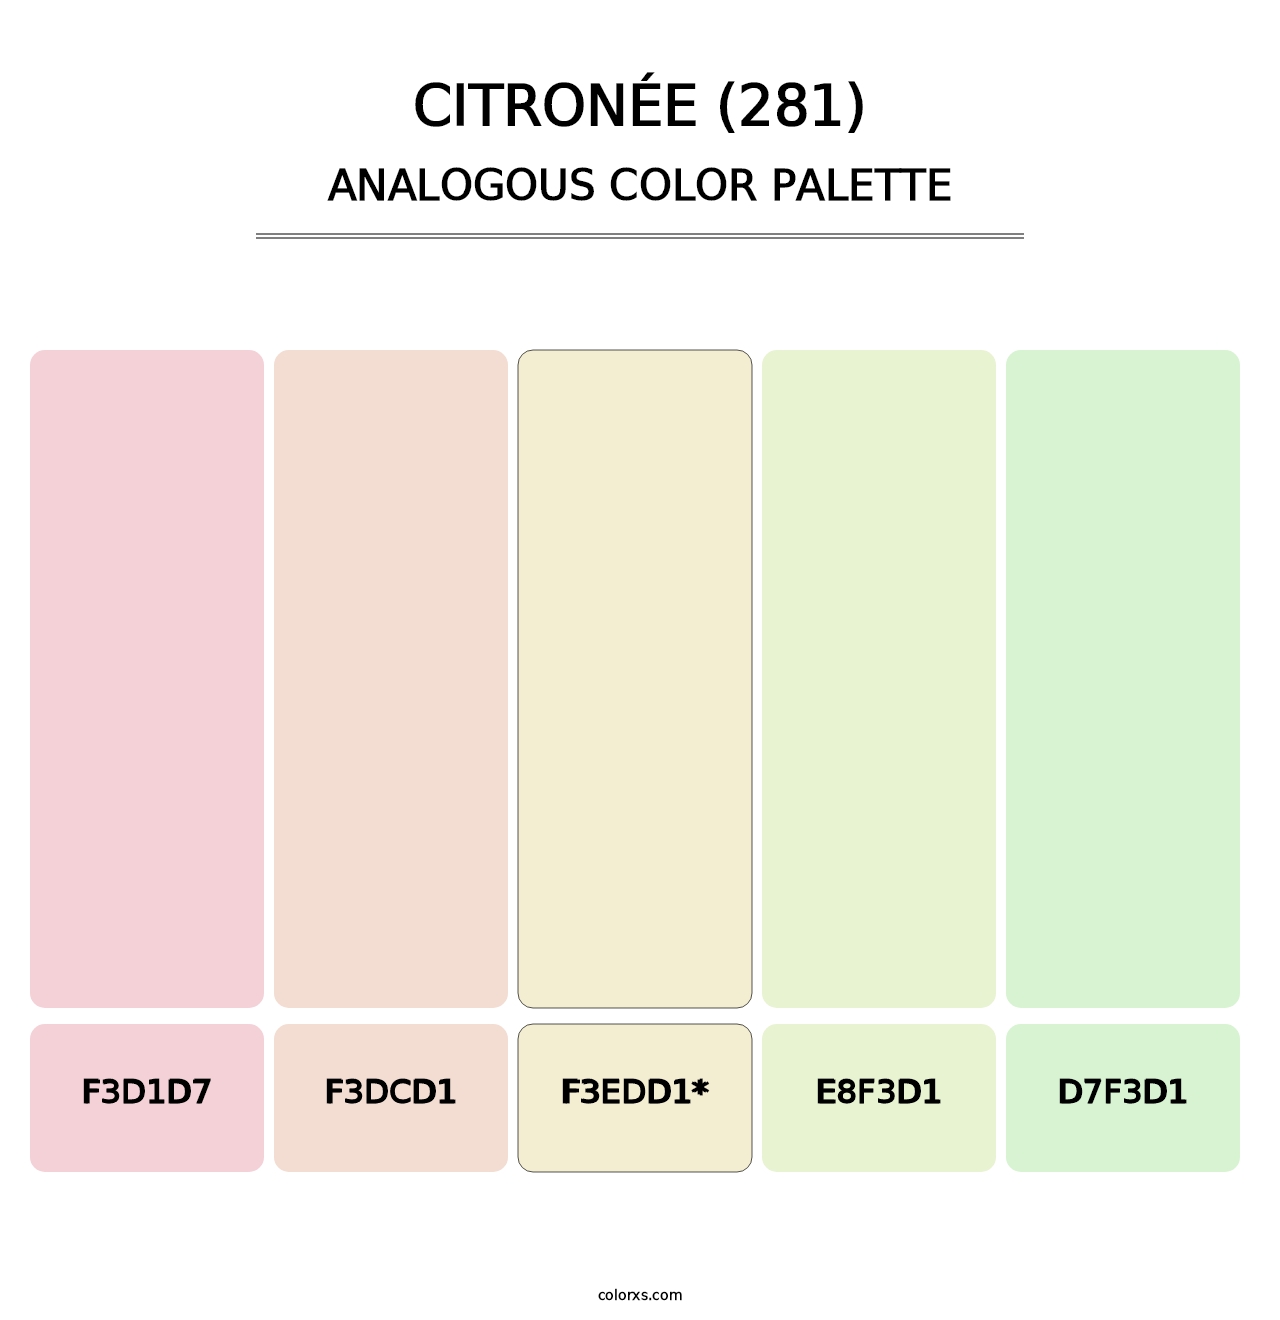 Citronée (281) - Analogous Color Palette